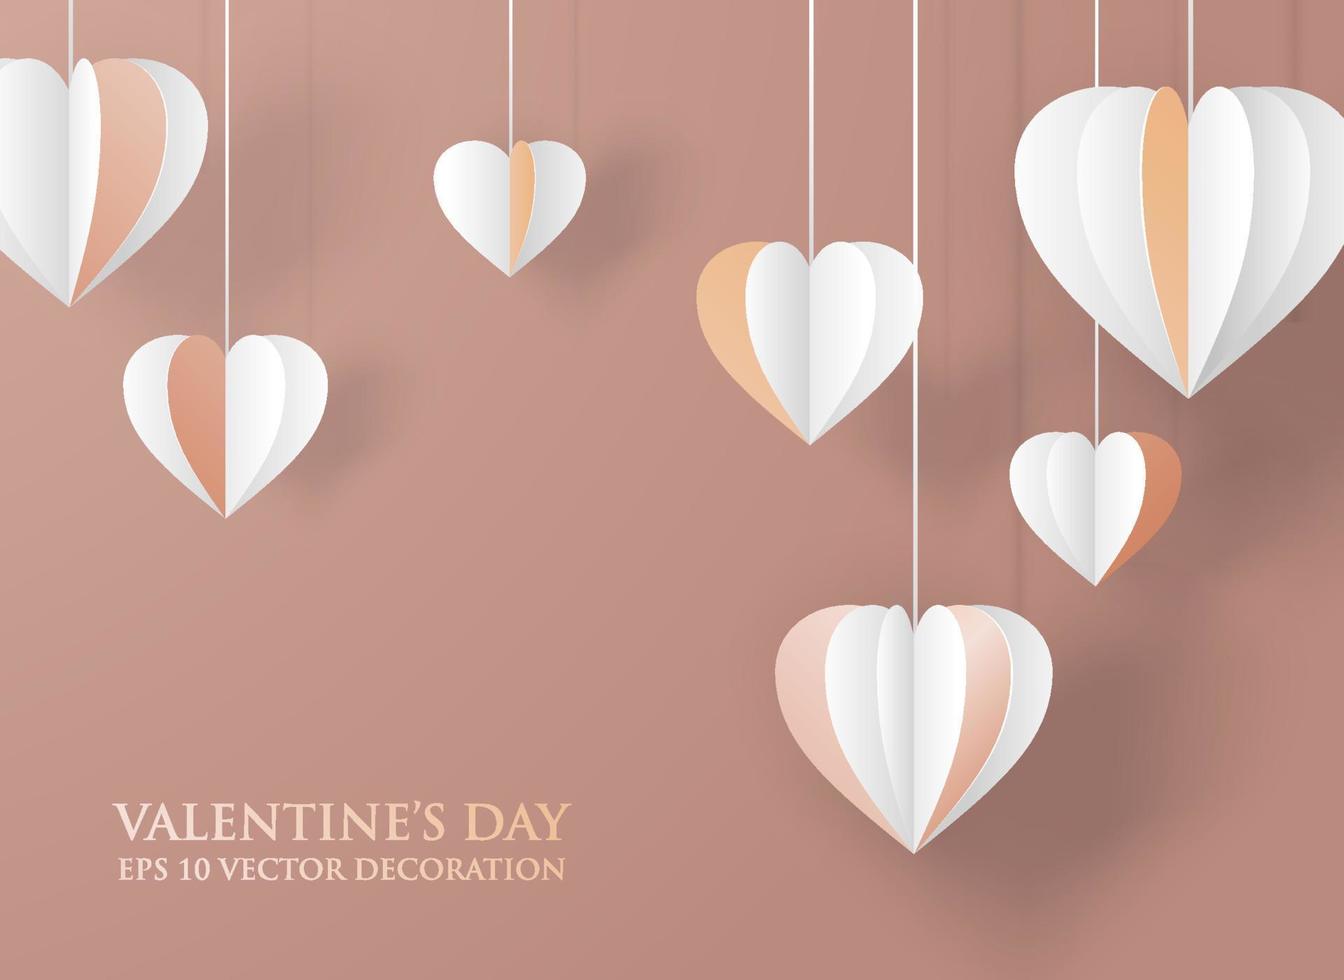 elegante fondo dorado del día de san valentín con decoración de corazones artesanales de papel colgante plantilla de ilustración vectorial vector